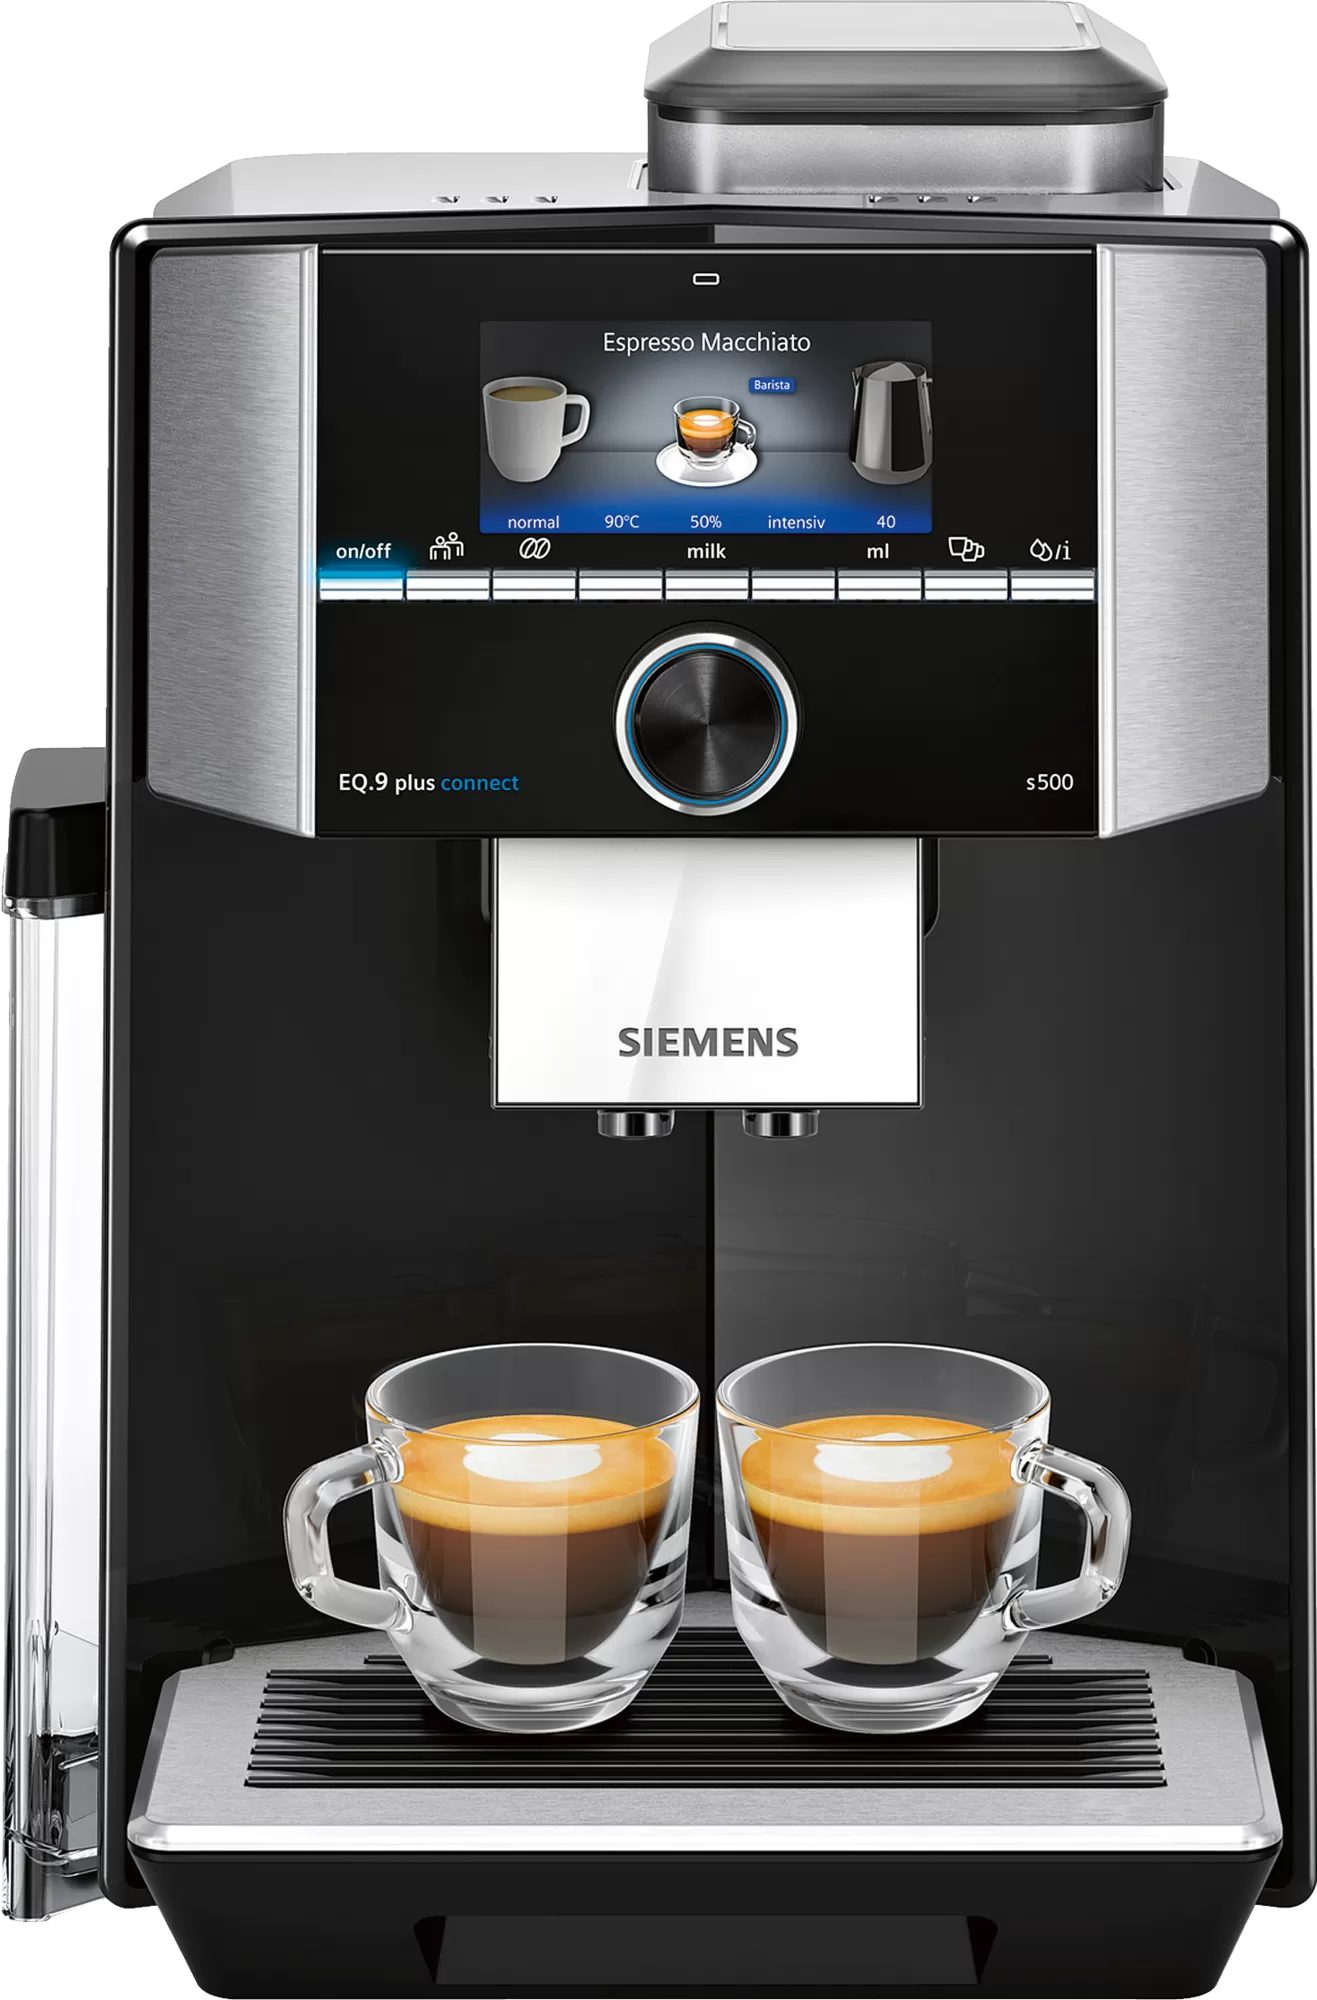 TI9555X9DE connect plus Kaffeevollautomat s500 SIEMENS EQ.9